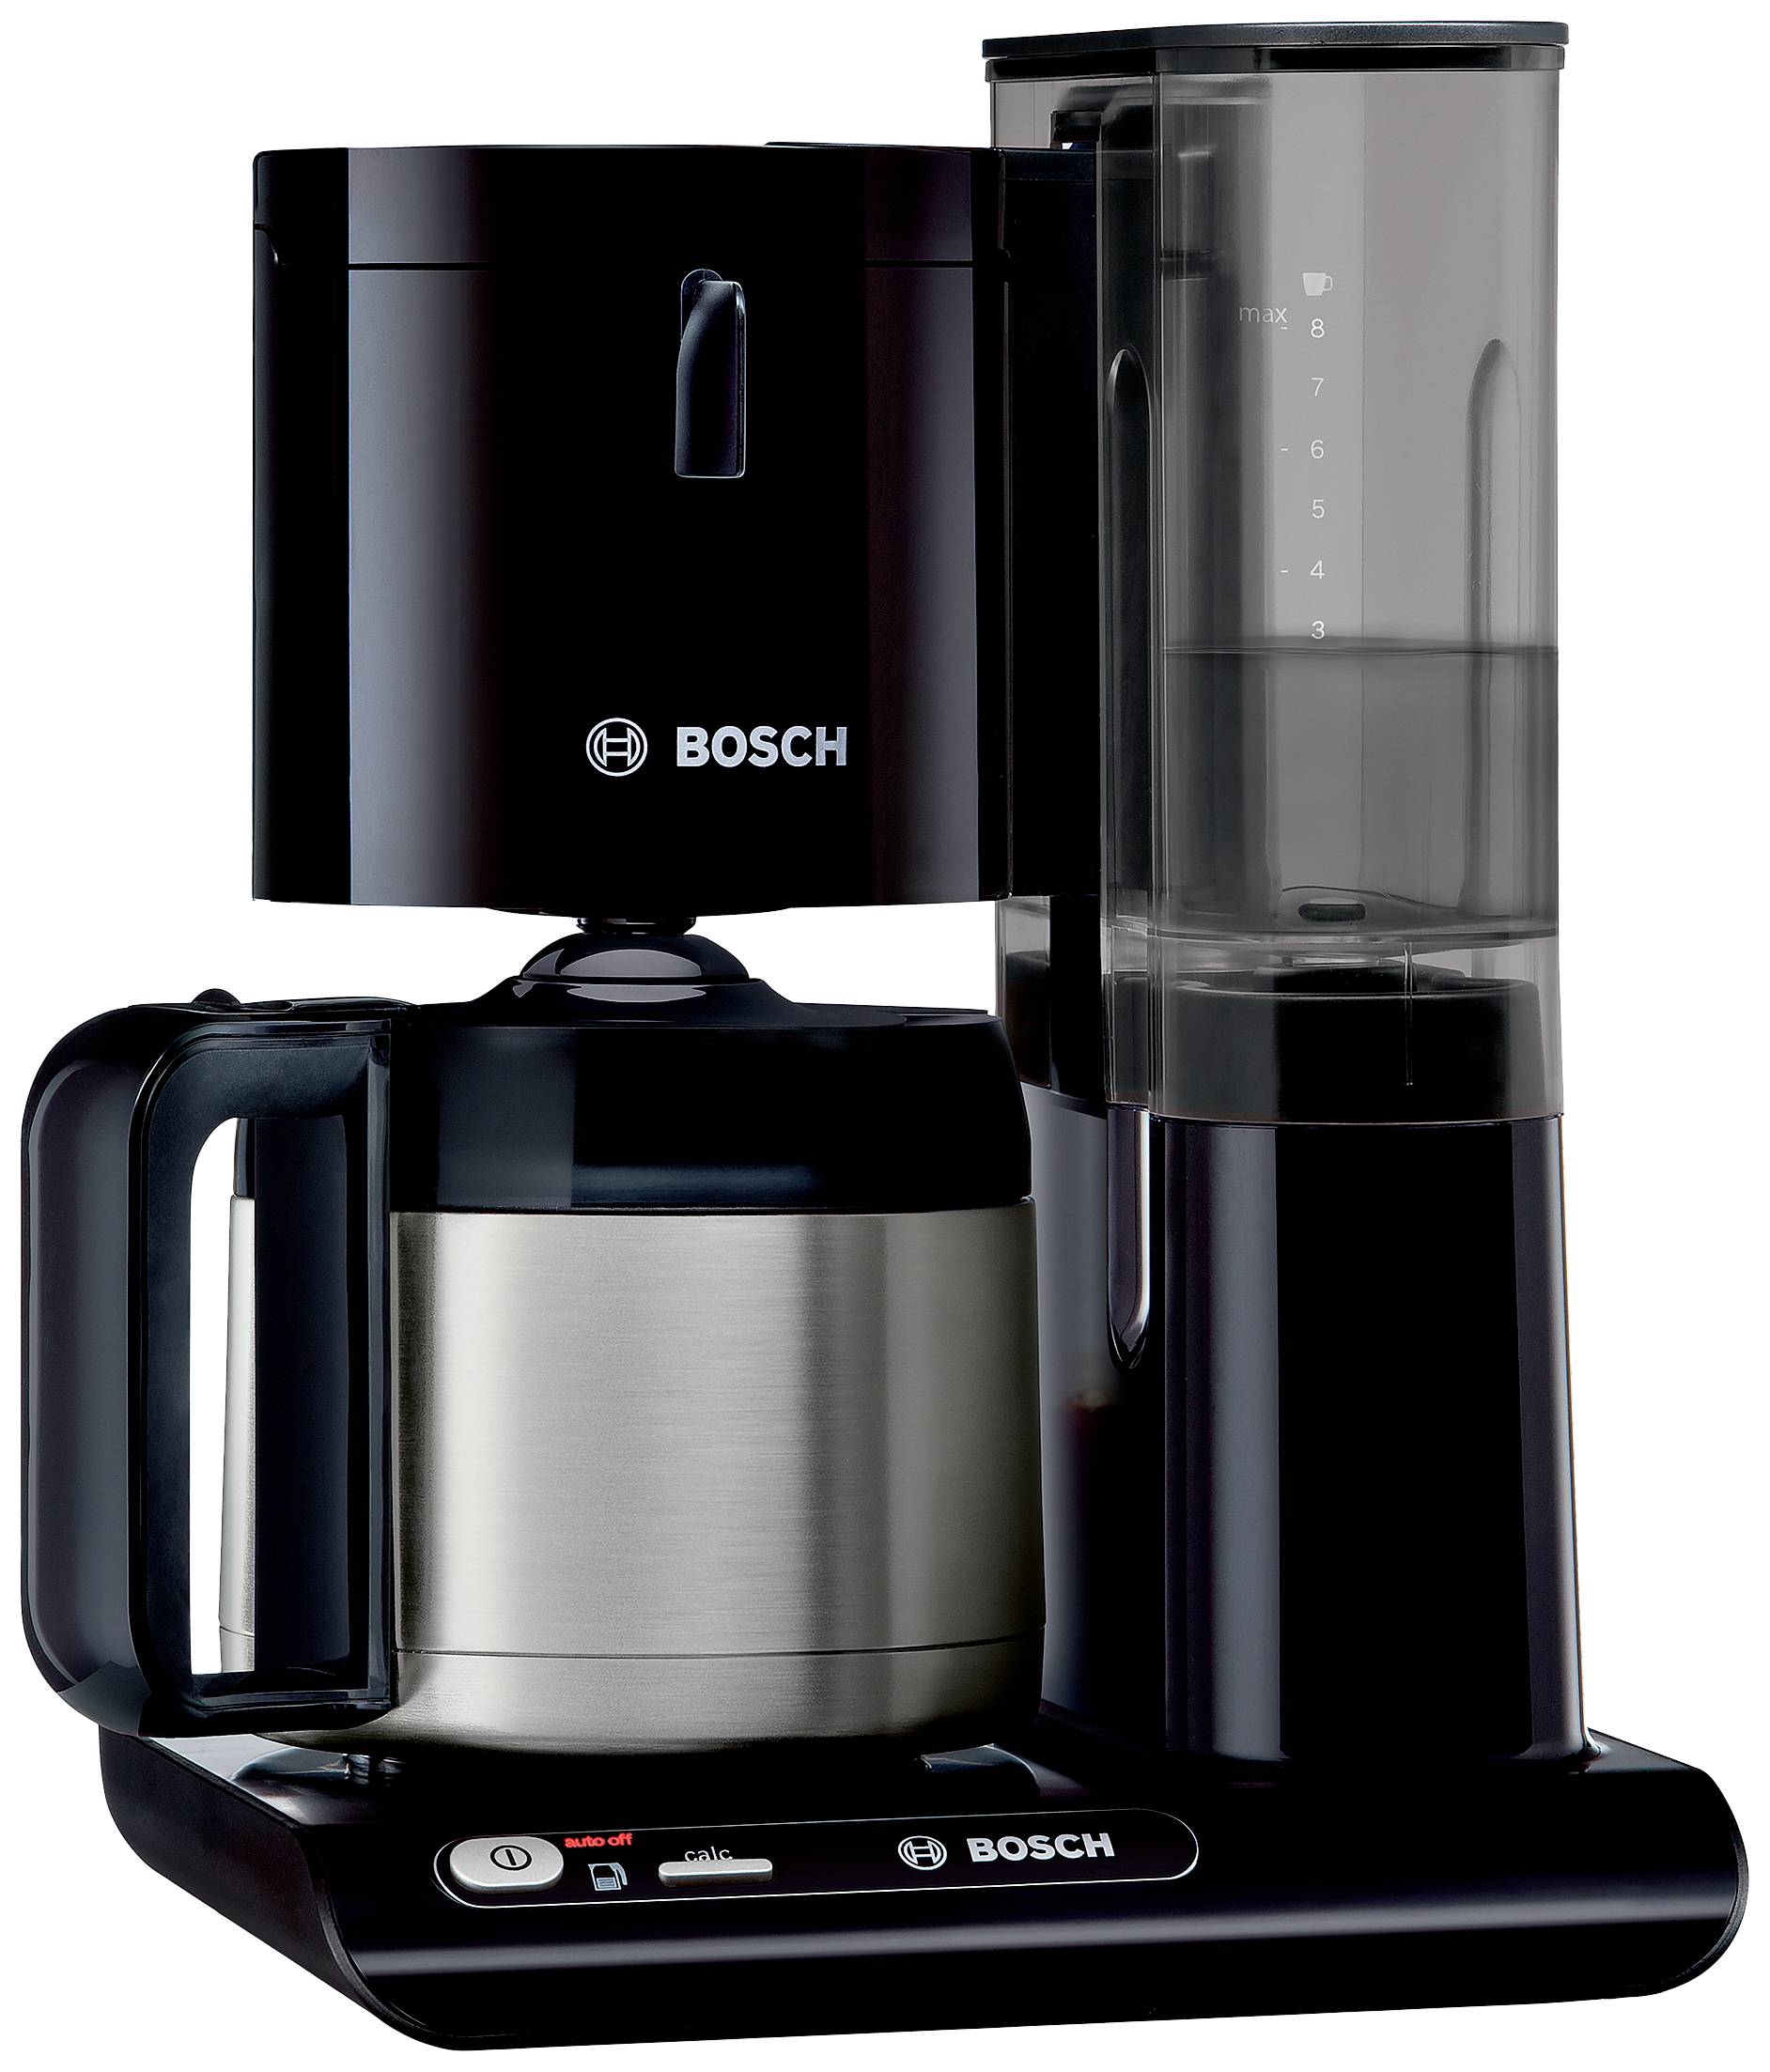 venijn Picasso Voorwaarden Bosch Haushalt TKA8A053 Koffiezetapparaat Zwart, RVS Capaciteit koppen: 8  Thermoskan kopen ? Conrad Electronic